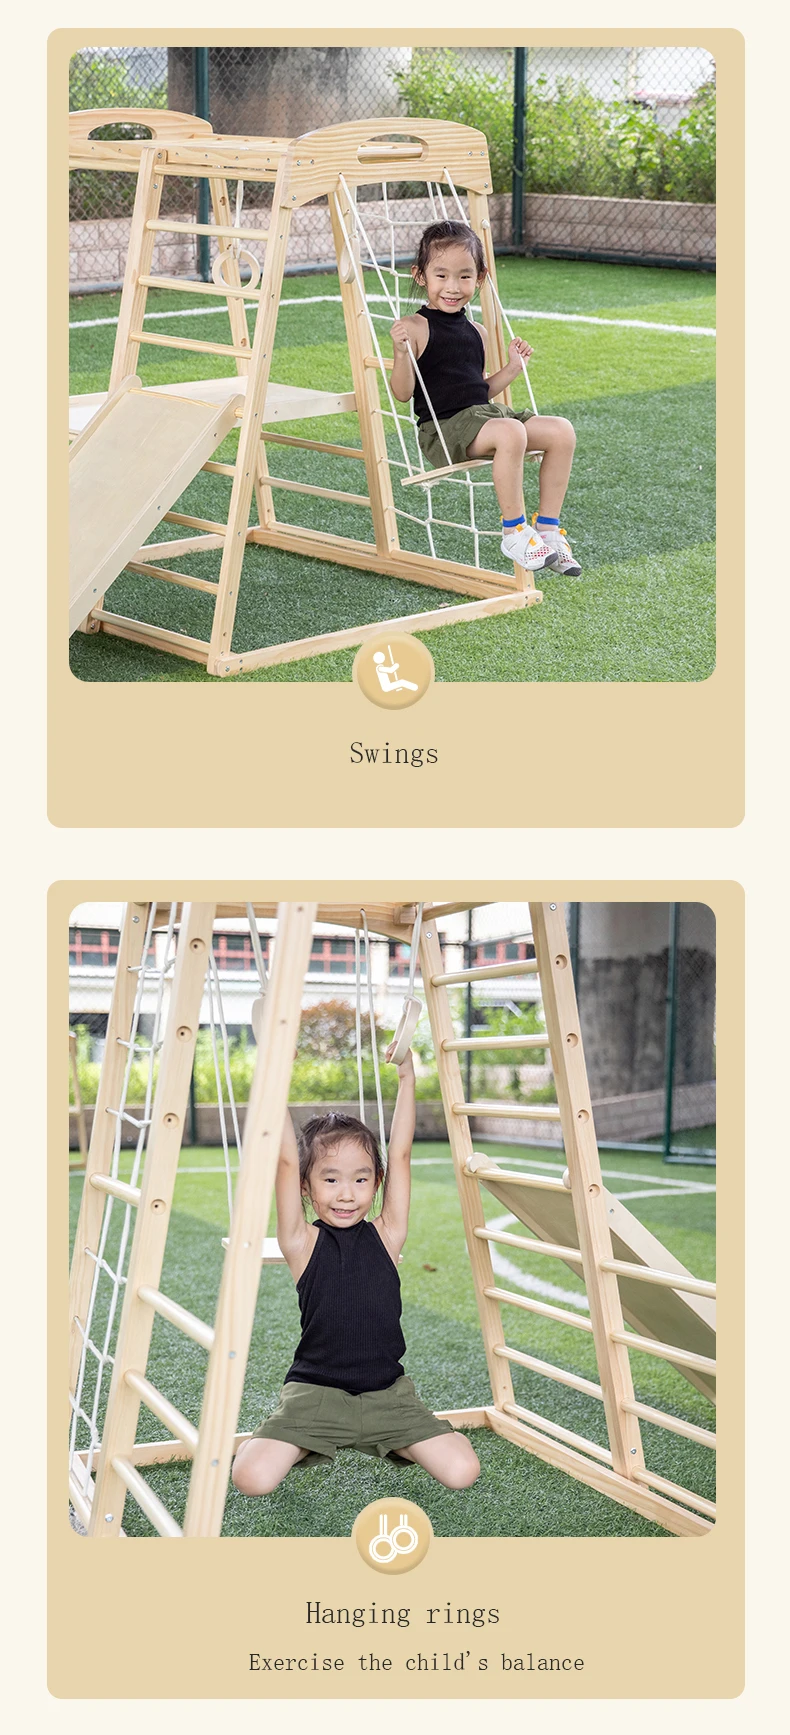 Jeux de plein air pour enfants, cadre d'escalade en bois, aire de jeux intérieure Pickler Dreieck, fournisseur d'équipement de terrain de jeu